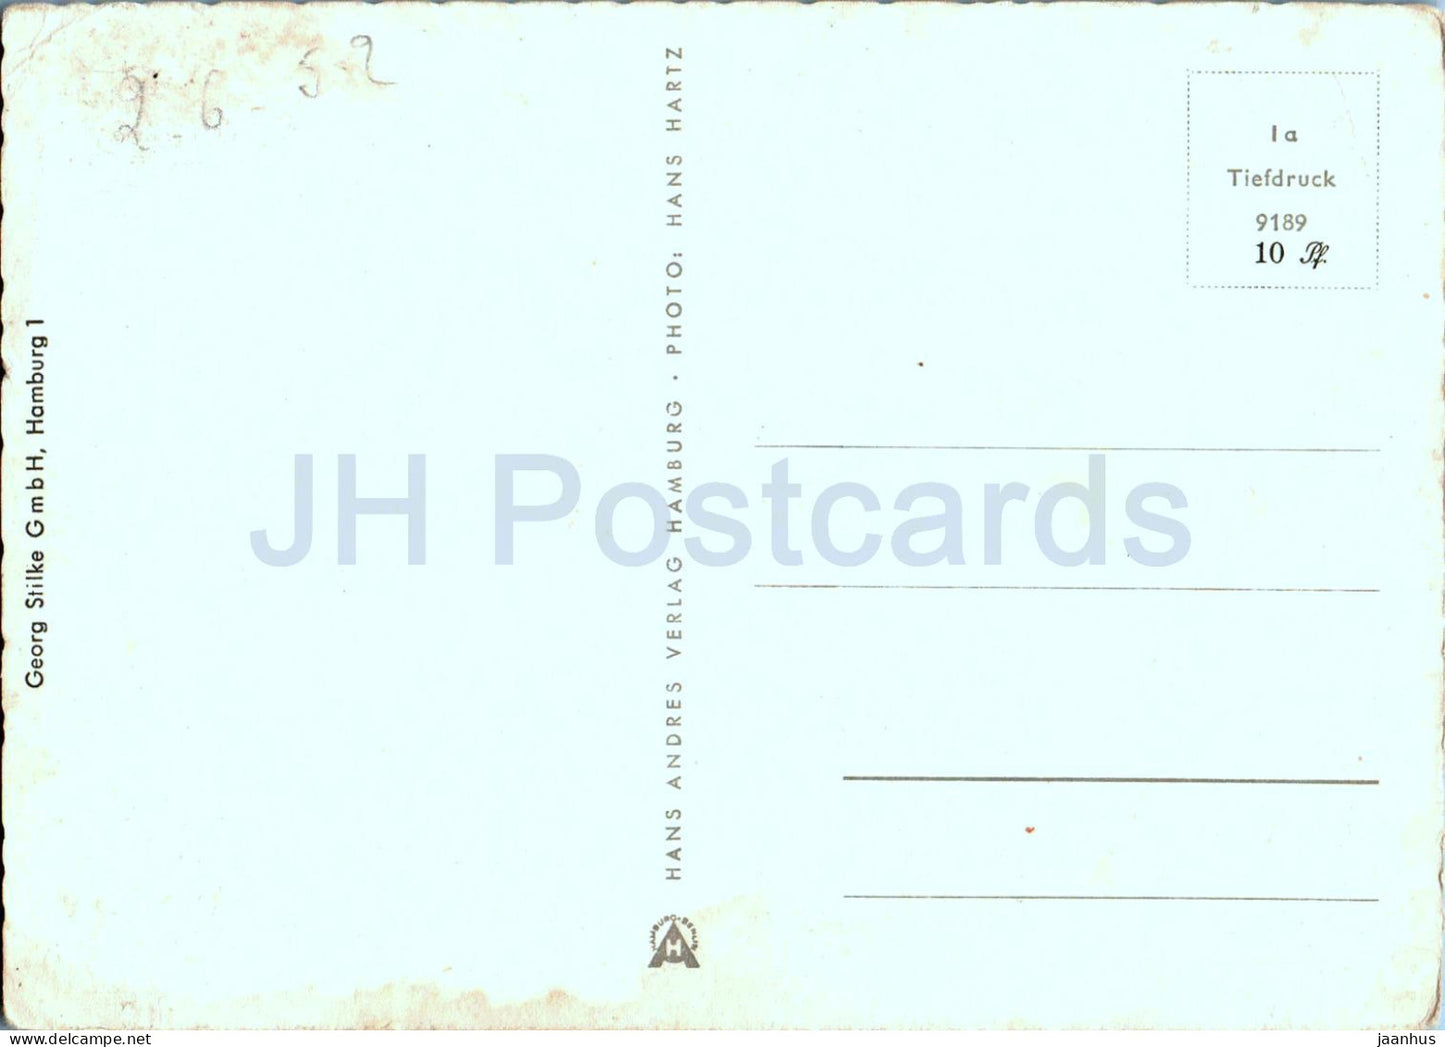 Hamburg - Alsterarkaden und Rathaus - 9189 - alte Postkarte - 1952 - Deutschland - gebraucht 